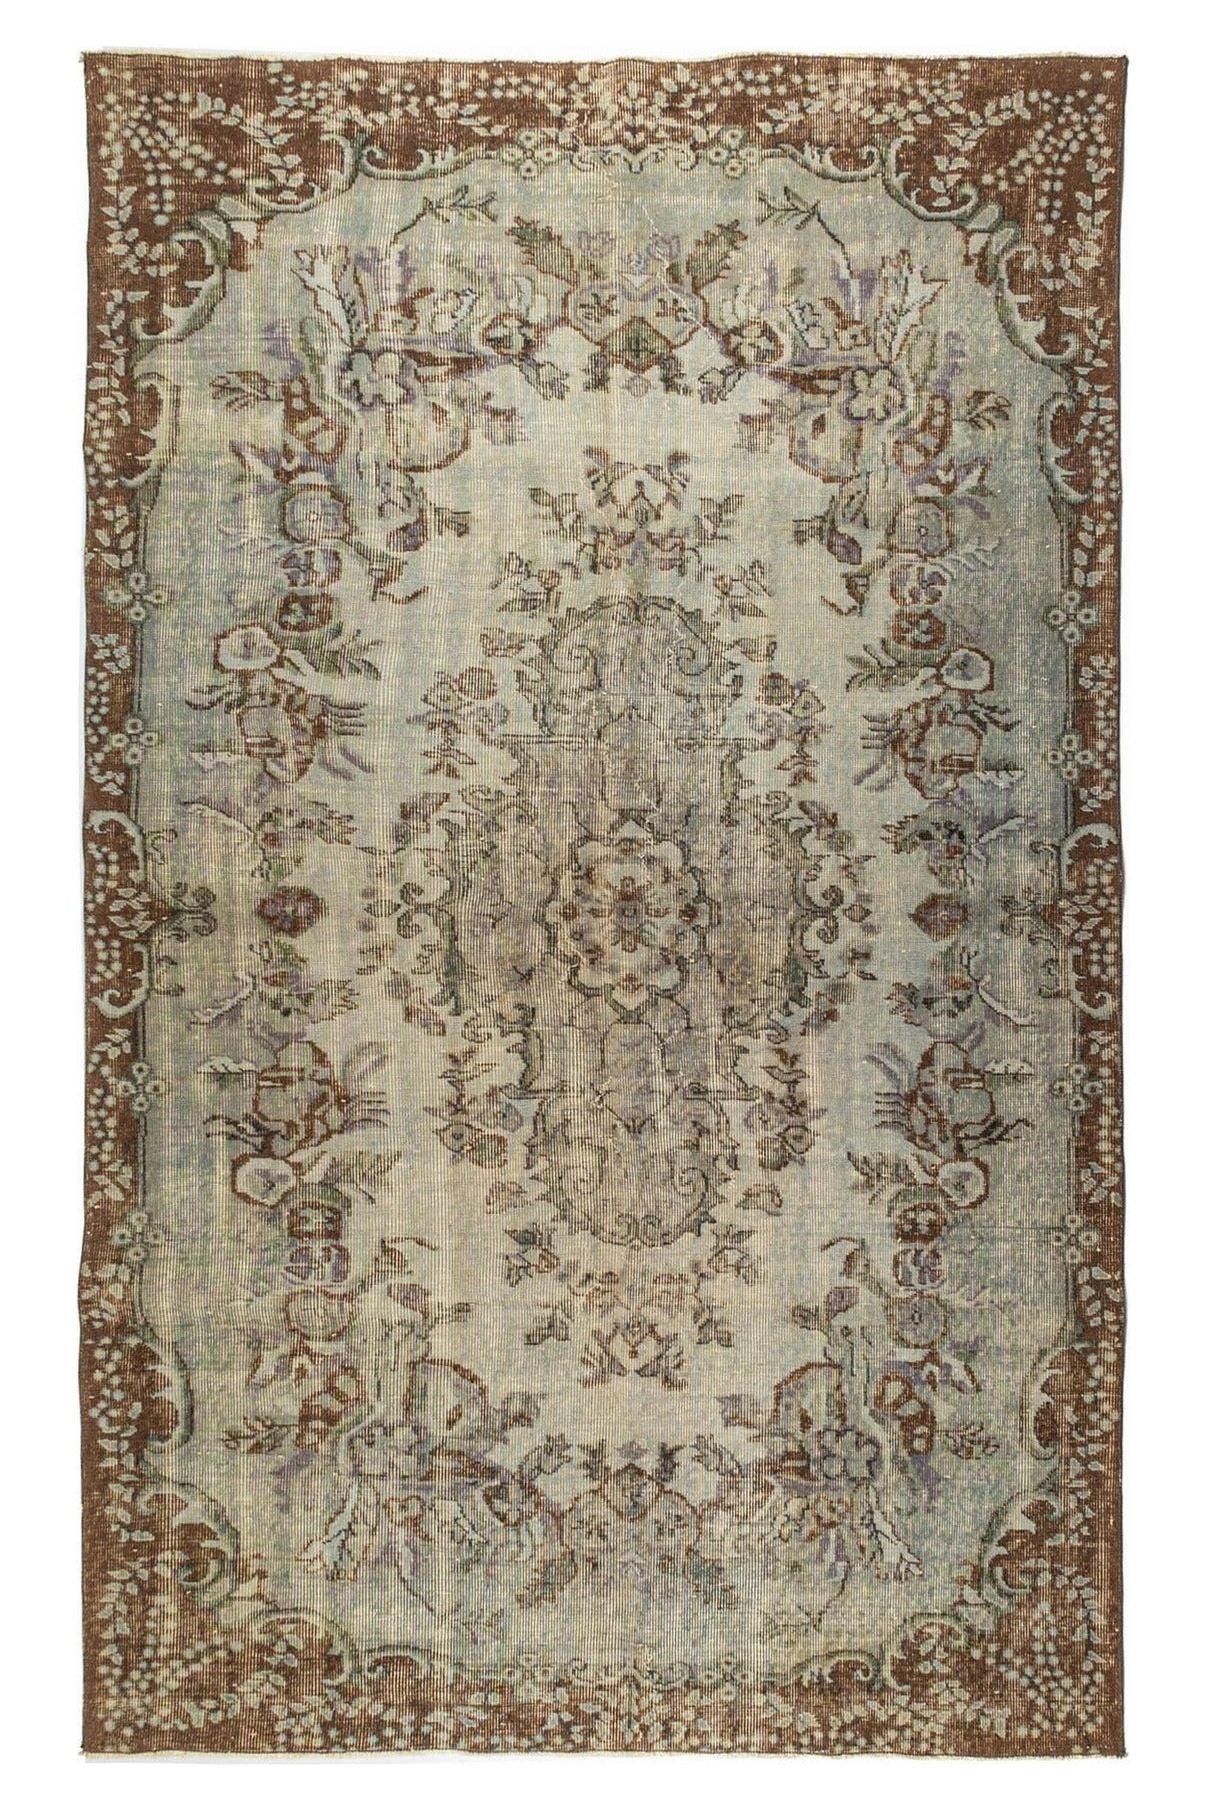 #Turkish_Carpets_Rugs# #Modern_Carpets# #Abrash_Carpets#Abrash-Bahrain-1018-180X277